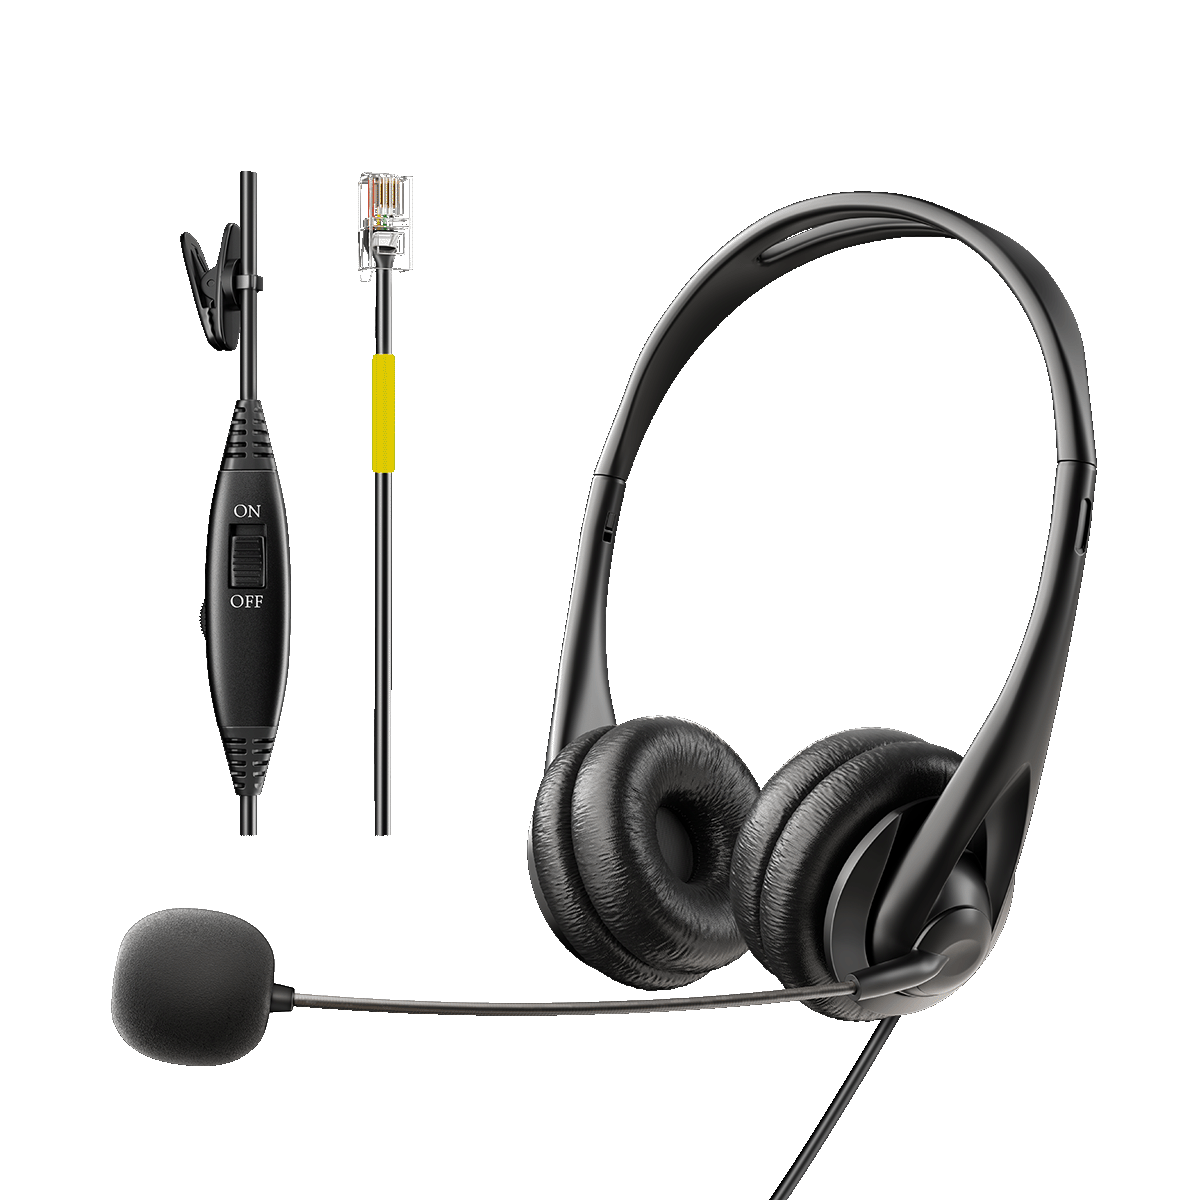 Wantek® h313 stereo RJ9【RJ4】 headset for office